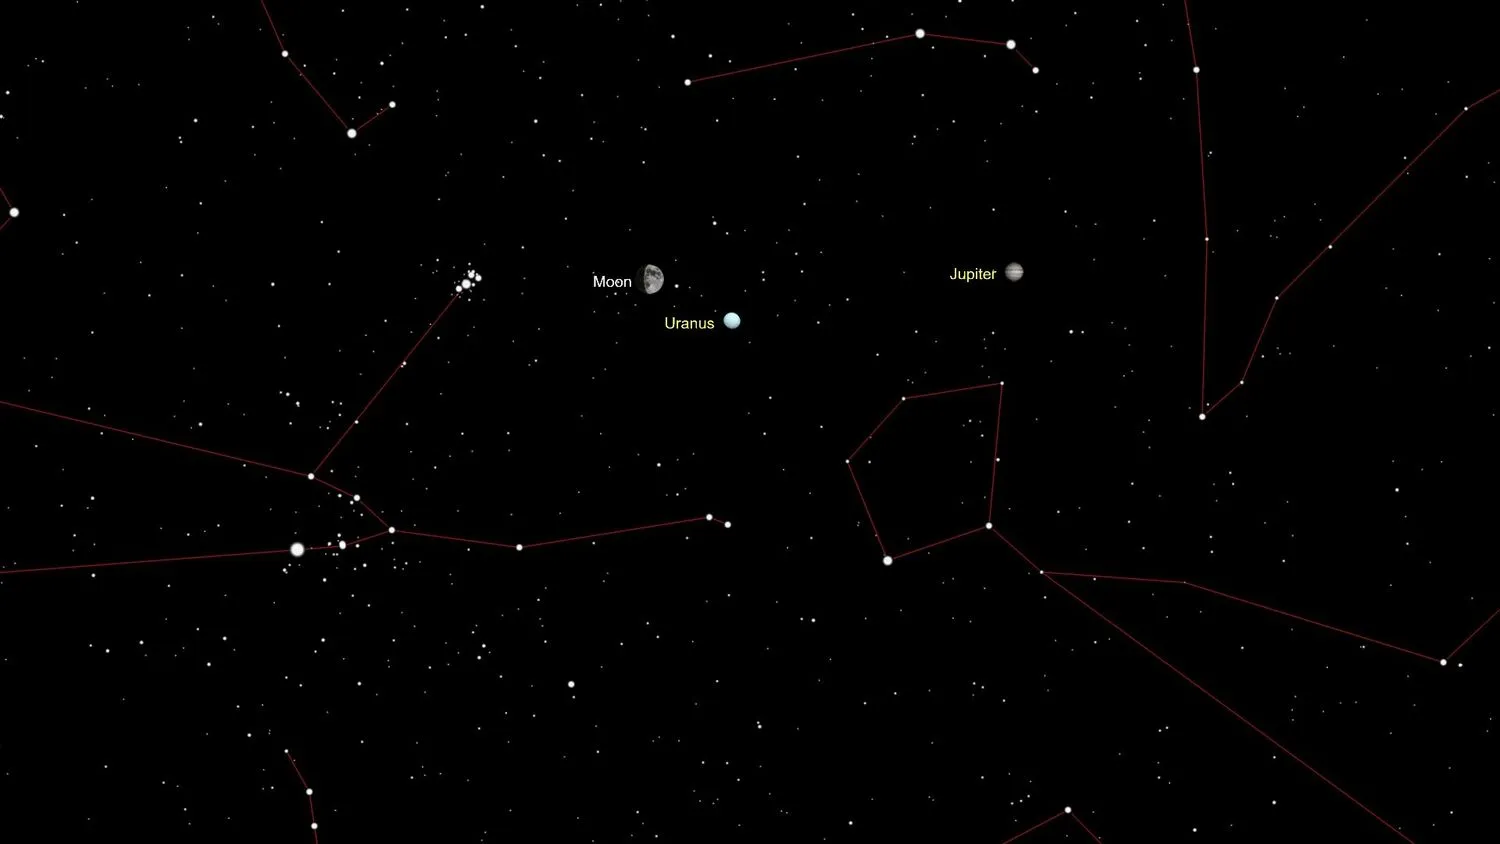 eine Illustration des Himmels, die den Mond, Uranus und Jupiter zwischen den Sternen zeigt